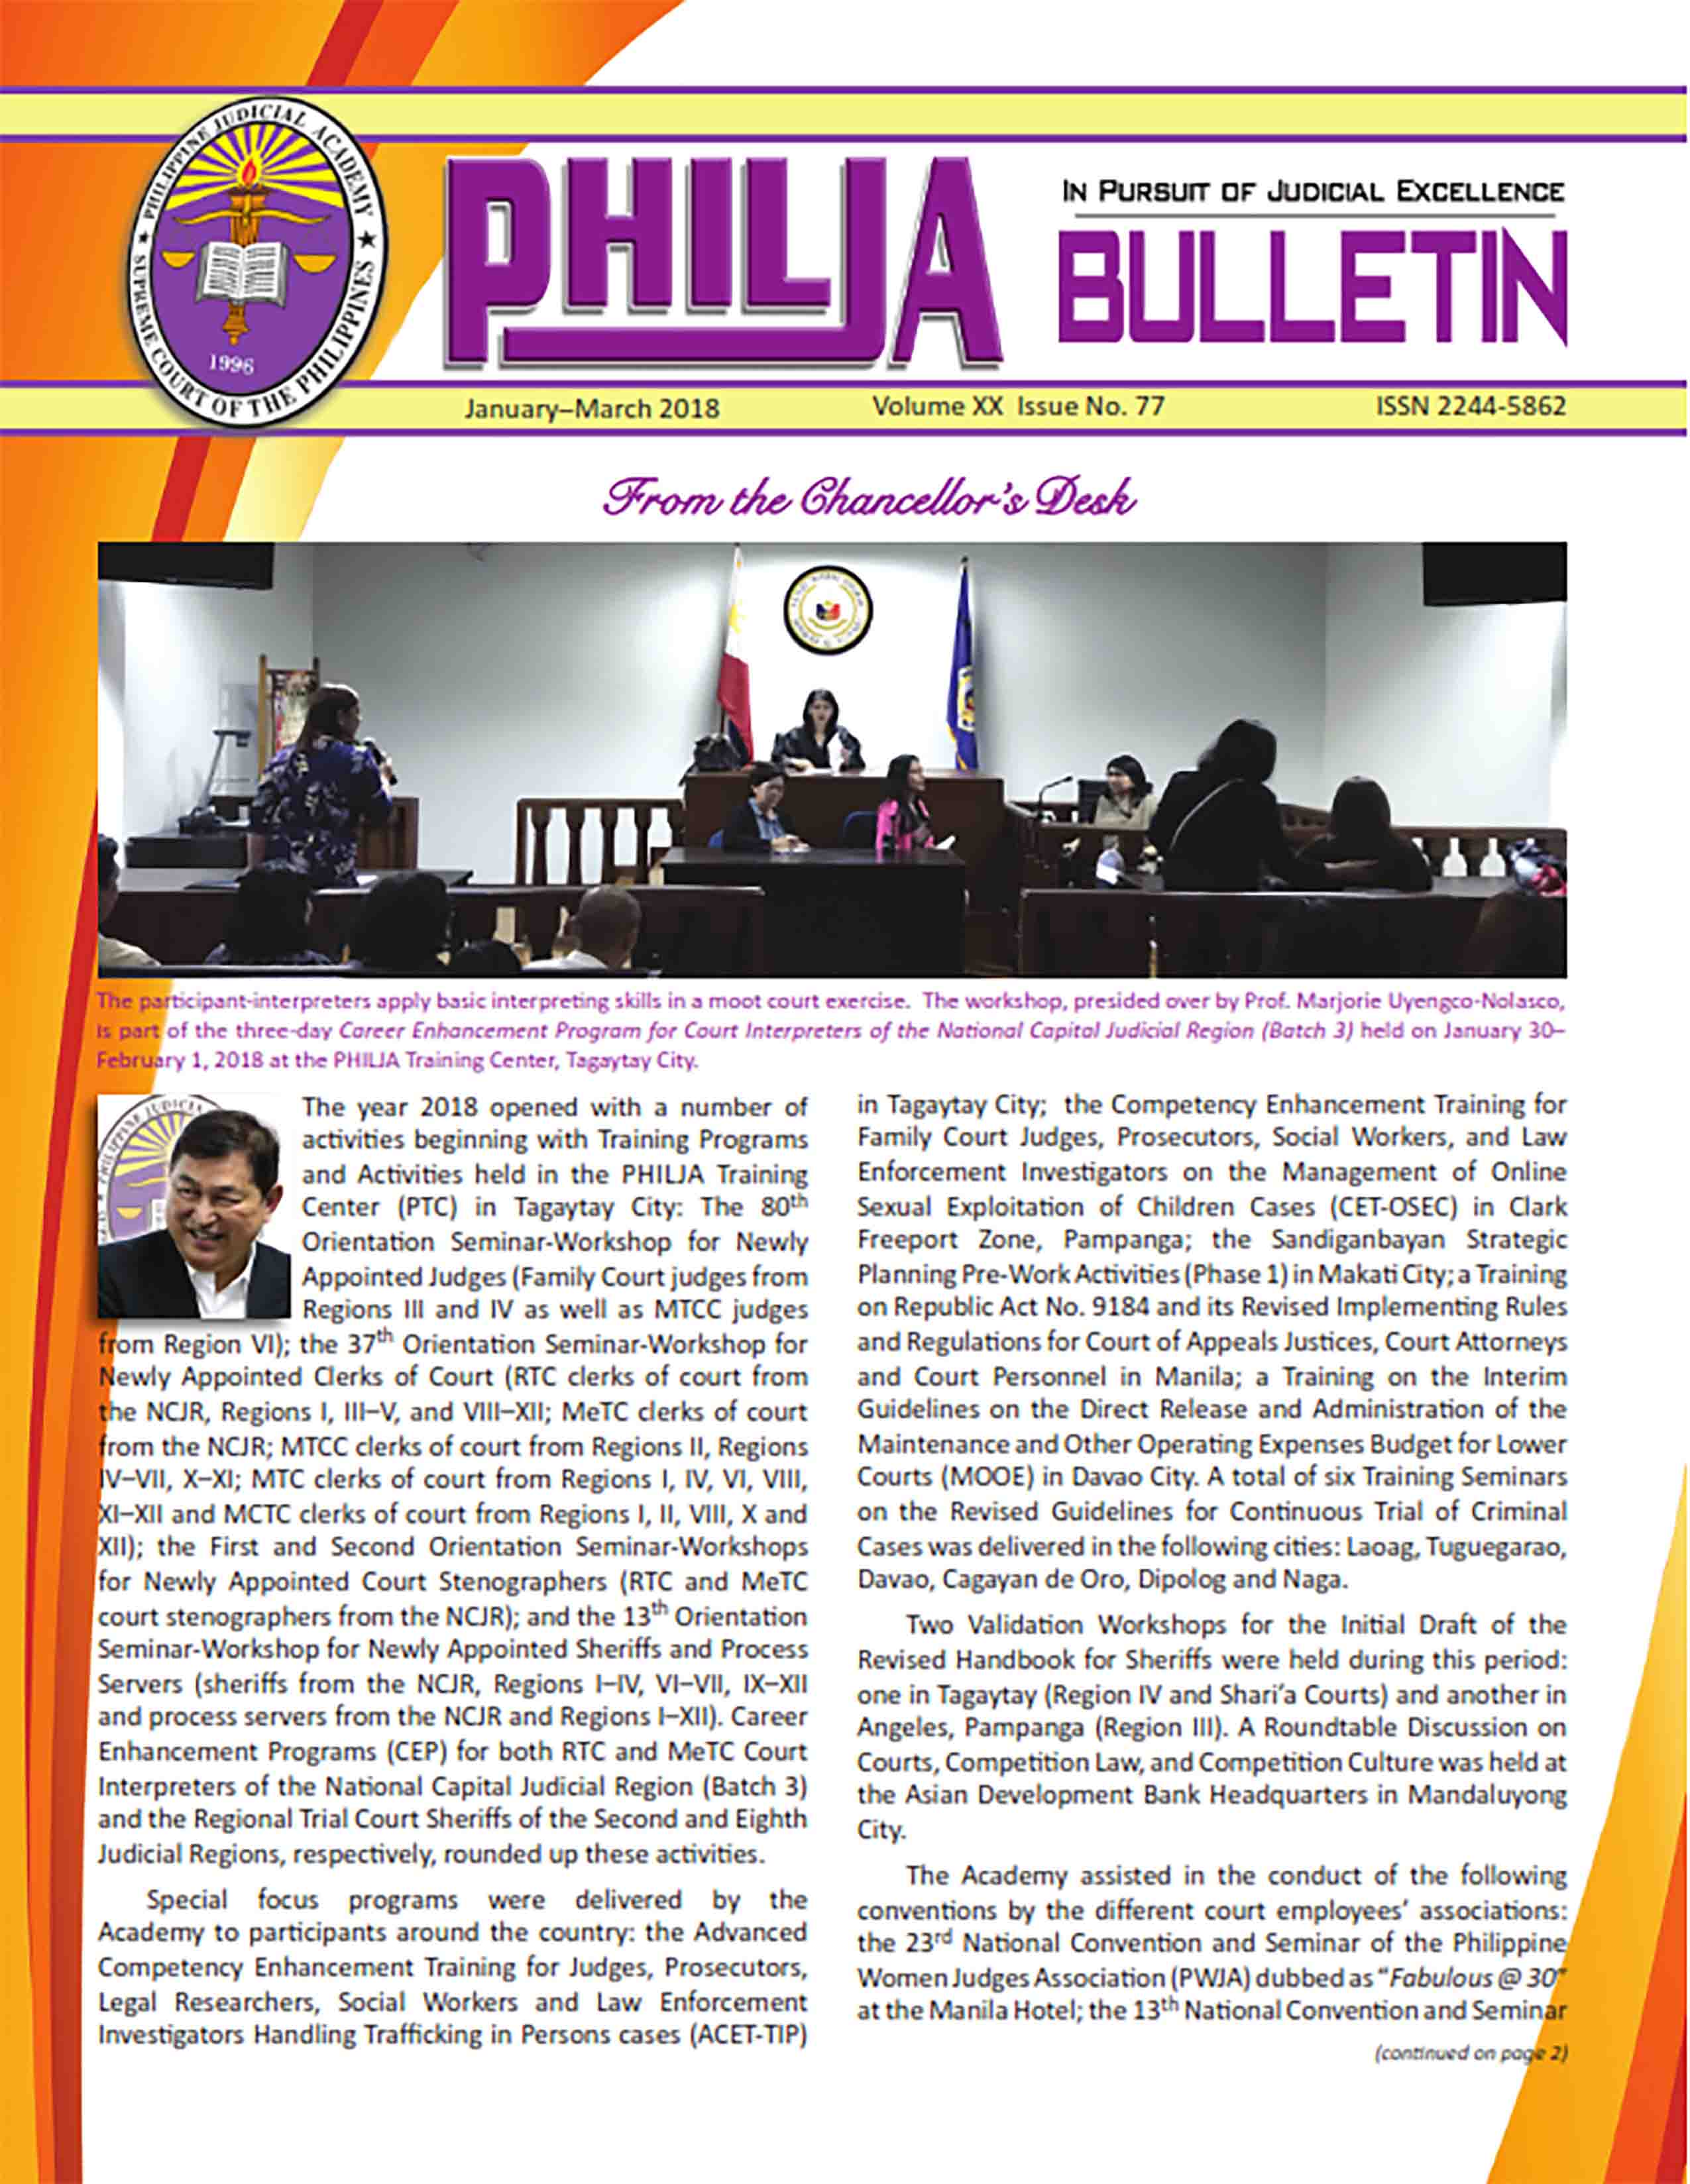 Bulletin 77